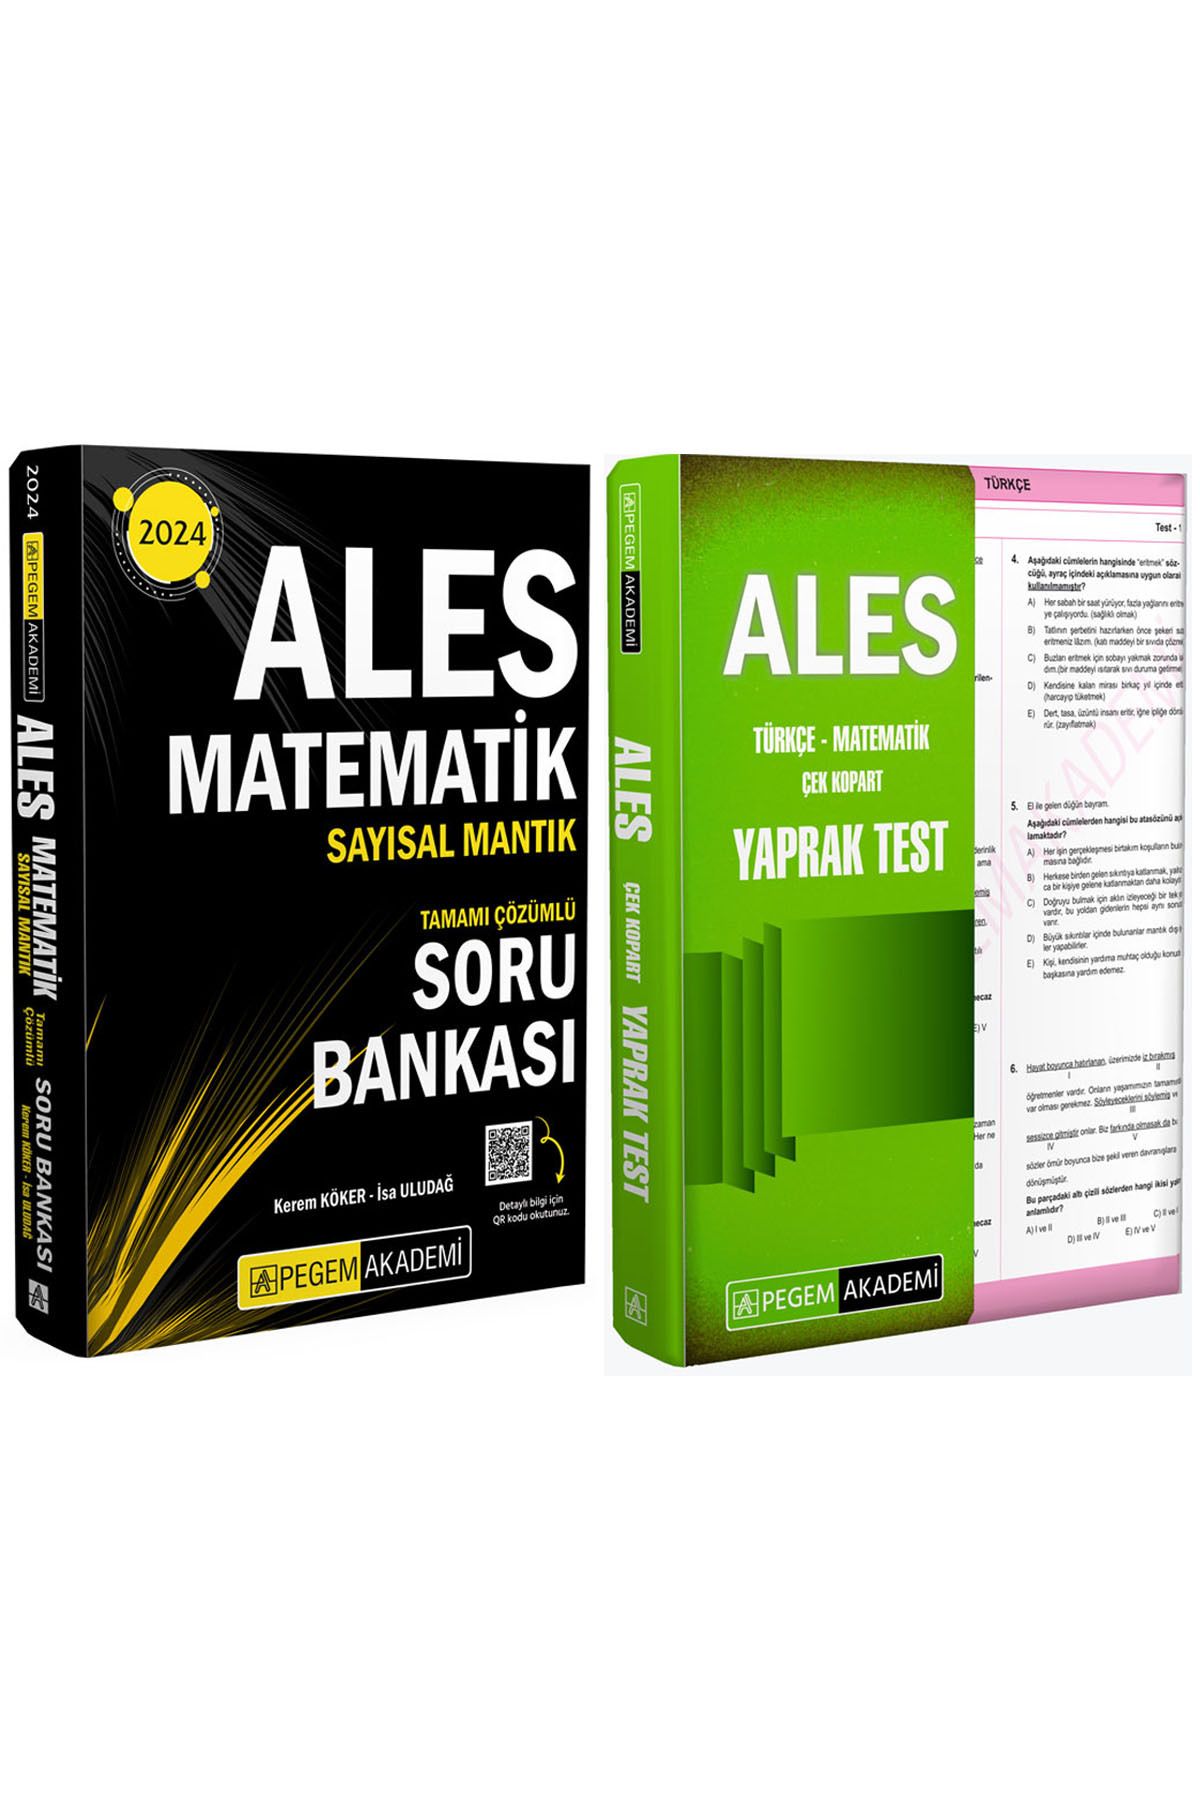 Pegem Akademi Yayıncılık ALES 2024 Çek Kopart Yaprak Test-Matematik Sayısal Mantık Tamamı Çözümlü Soru Bankası